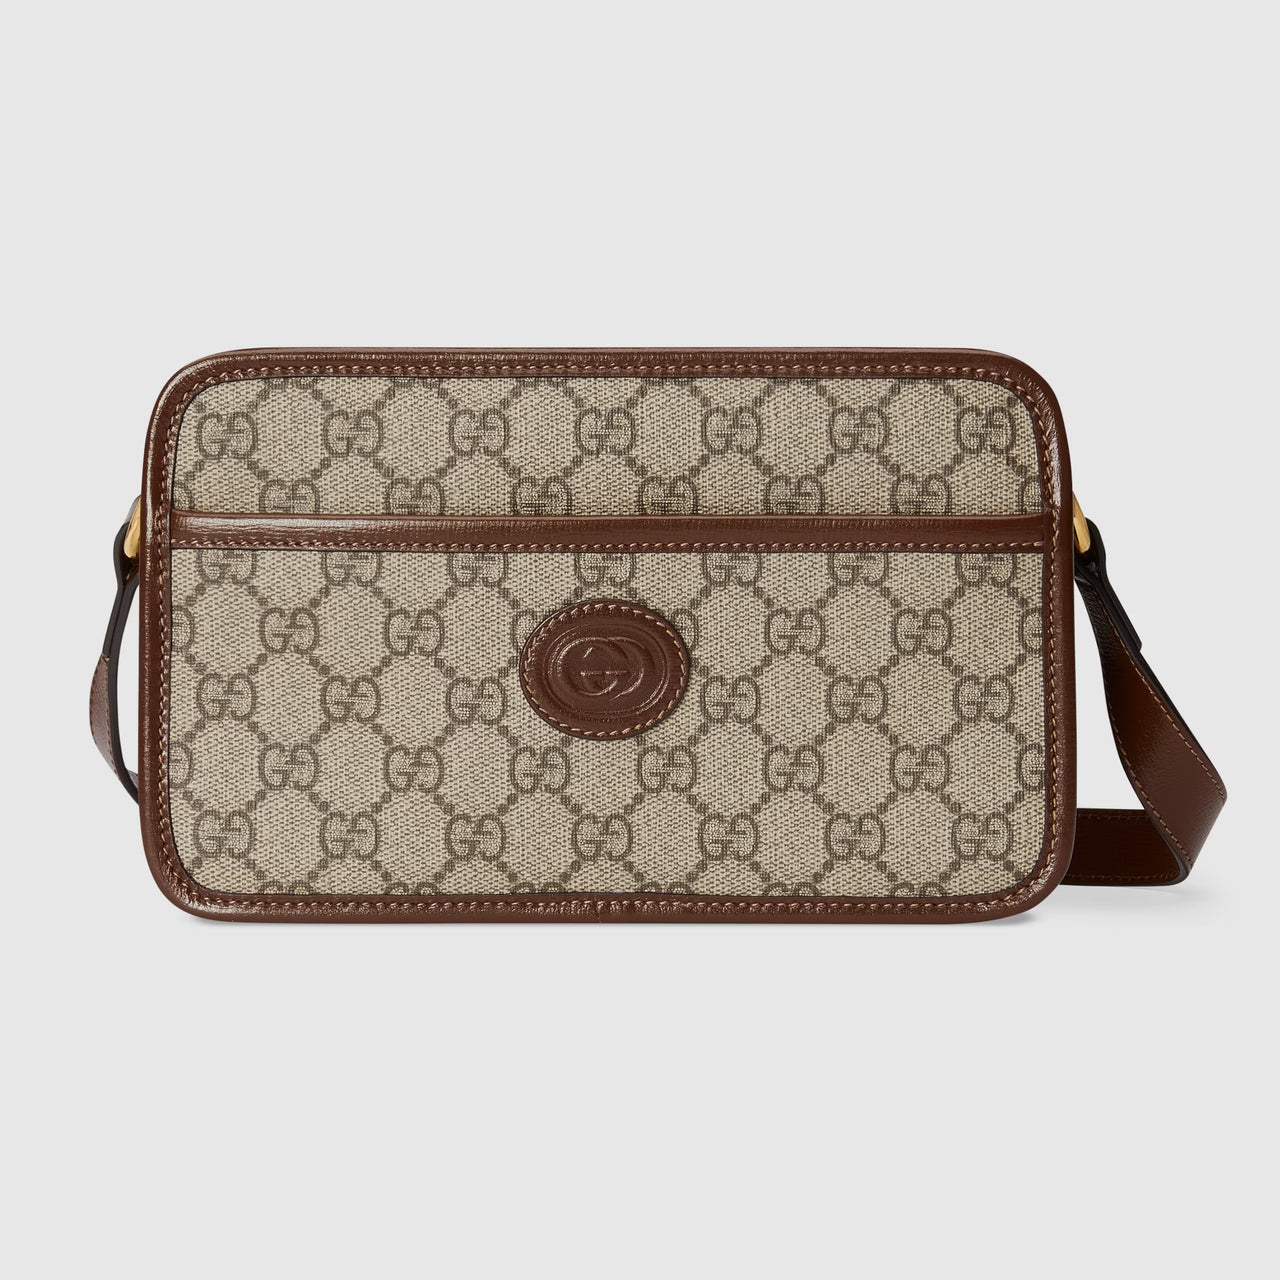 Gucci Mini Bag with Interlocking G (Beige & Ebony)